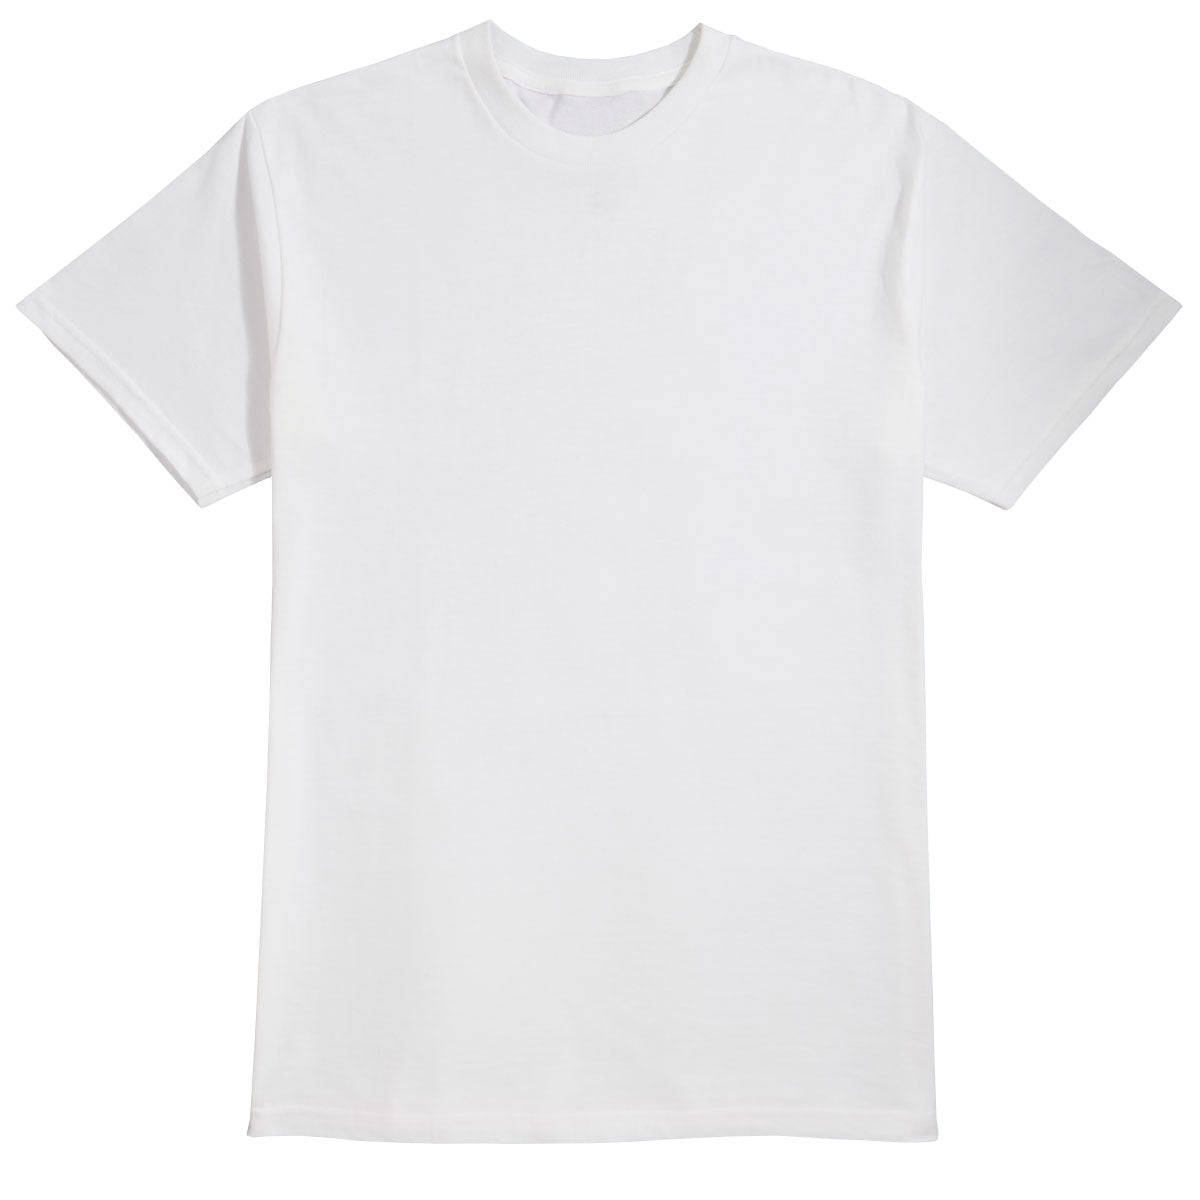 Alien Workshop Spectrum Color-Up T-Shirt - White - XXL image 1